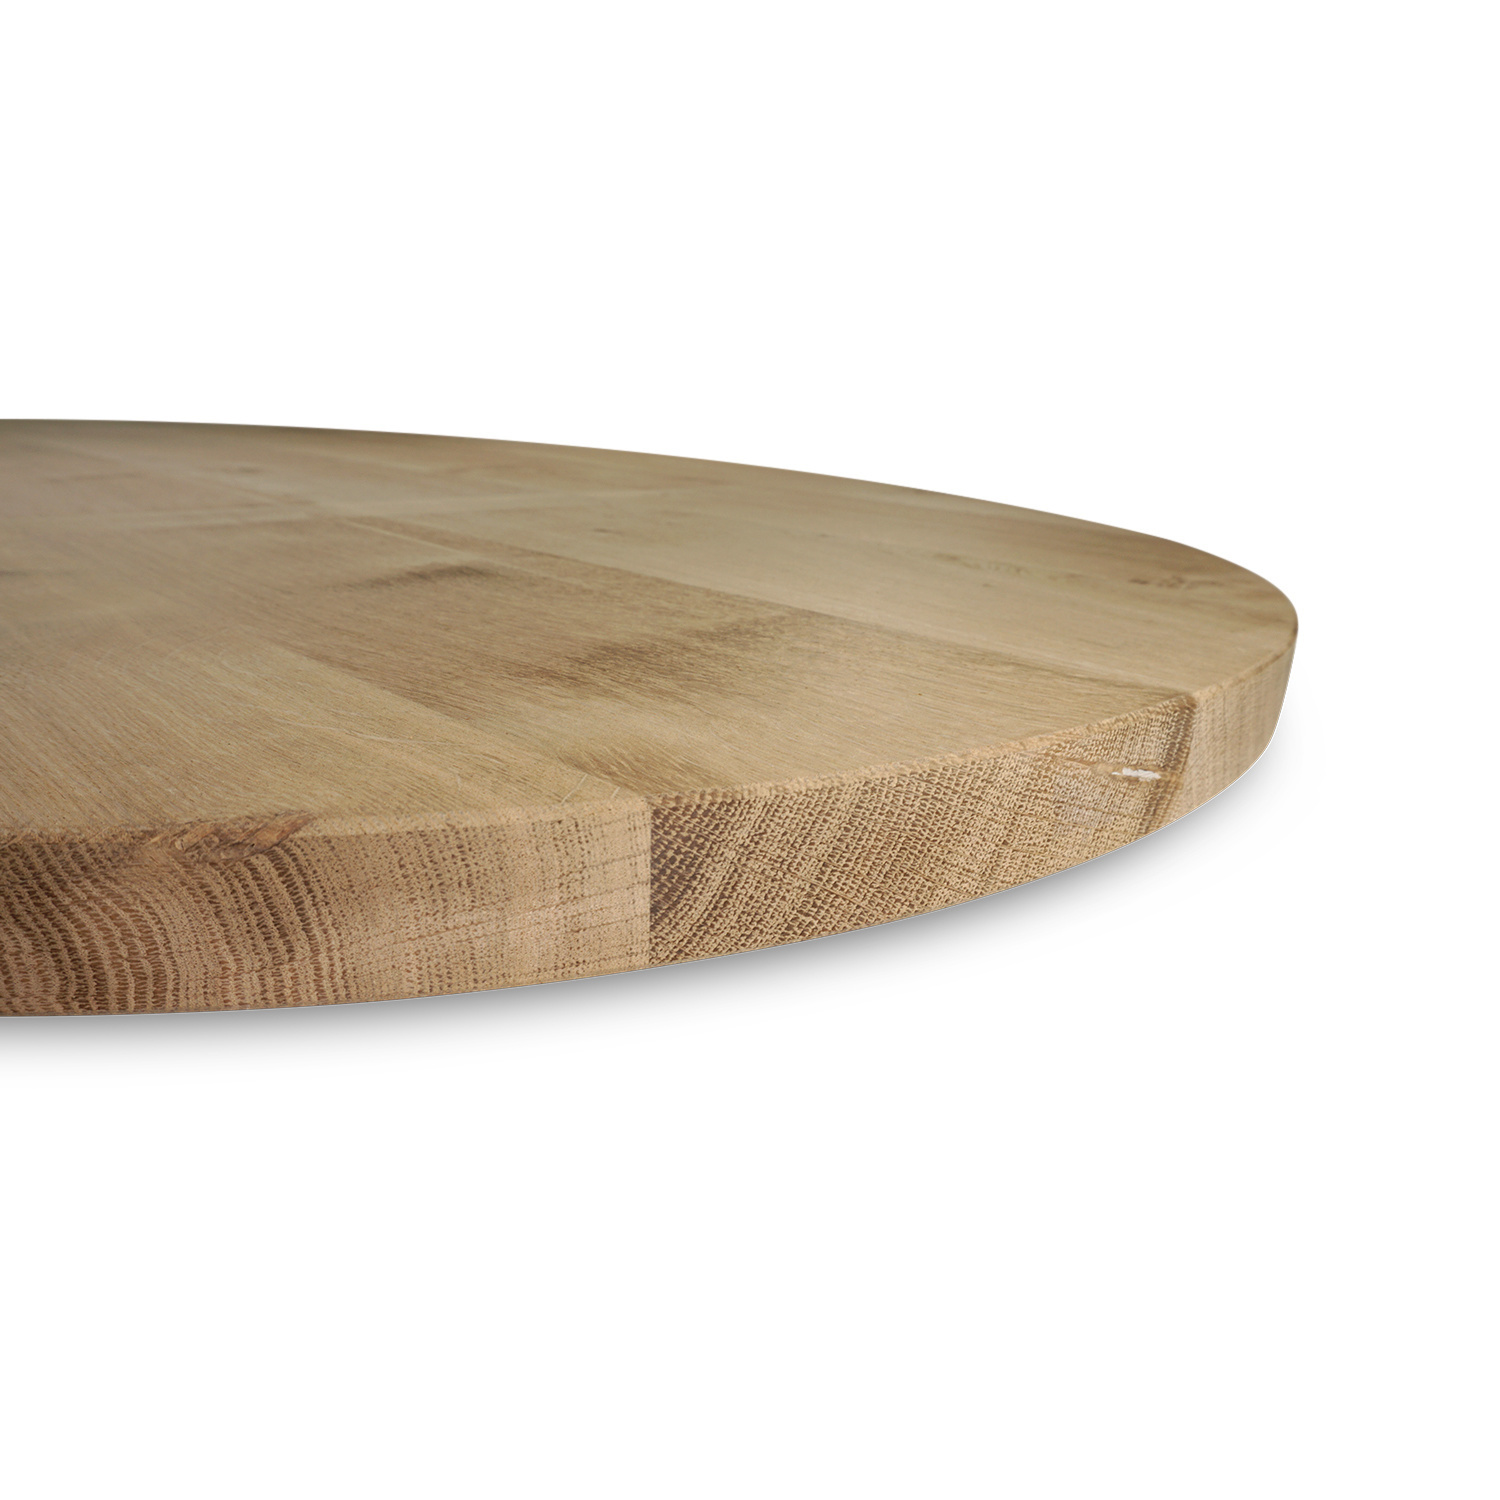  Tischplatte Eiche oval - 4 cm dick - Eichenholz Rustikal - Ellipse Eiche Tischplatte massiv - HF 8-12%